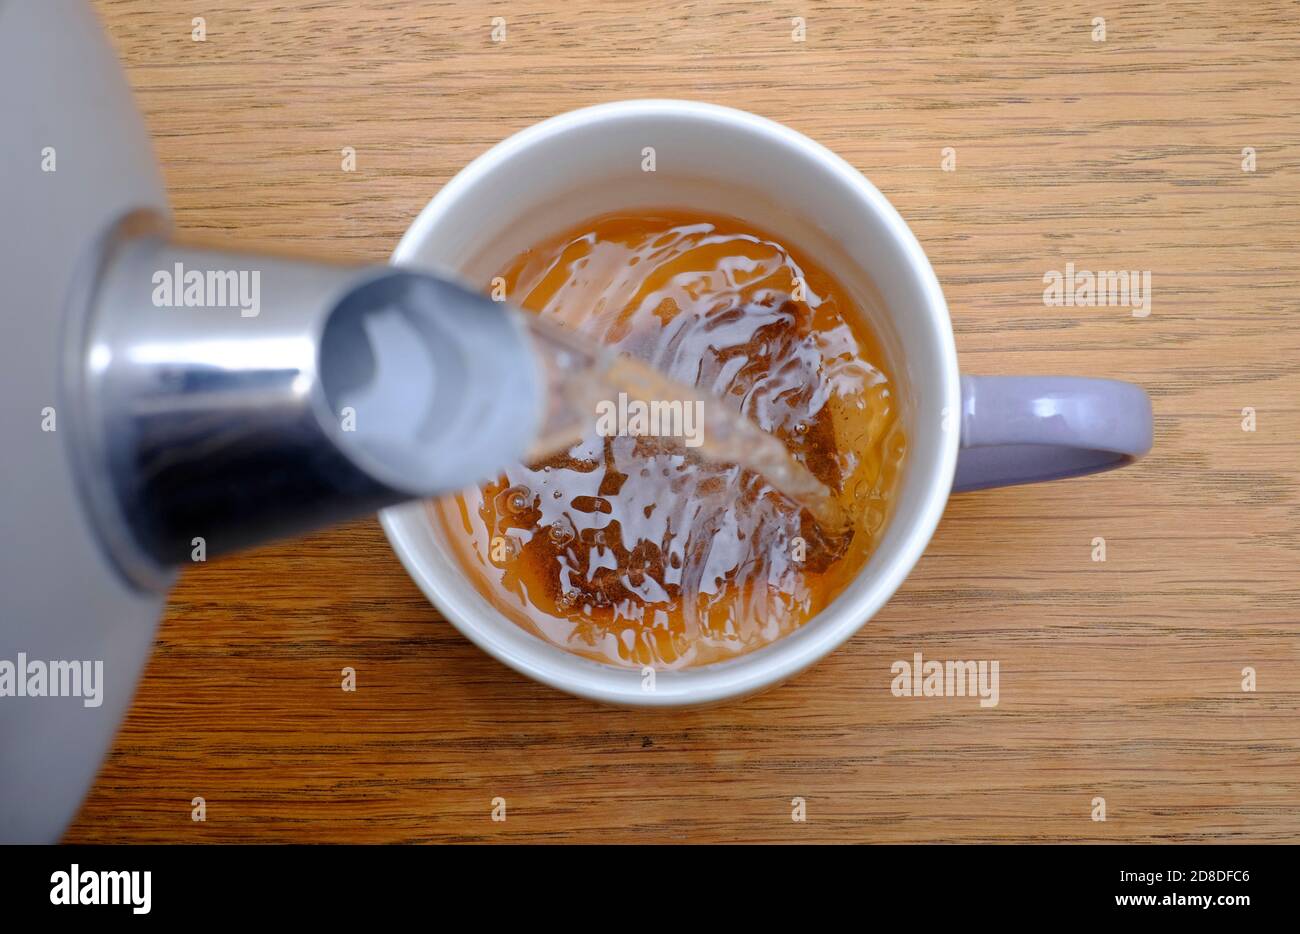 preparar una taza de té, vertiendo agua caliente sobre el tebag en la taza, norfolk, inglaterra Foto de stock